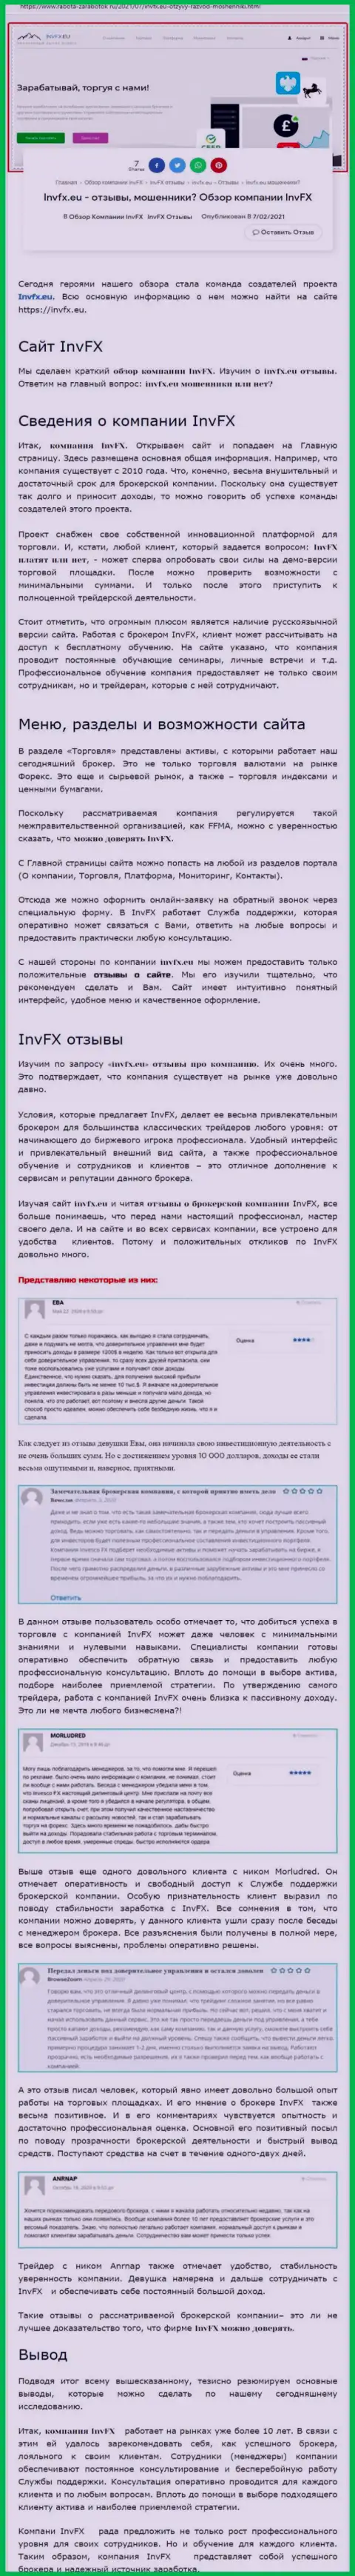 Материал сайта работа-заработок ру о ФОРЕКС брокерской организации INVFX